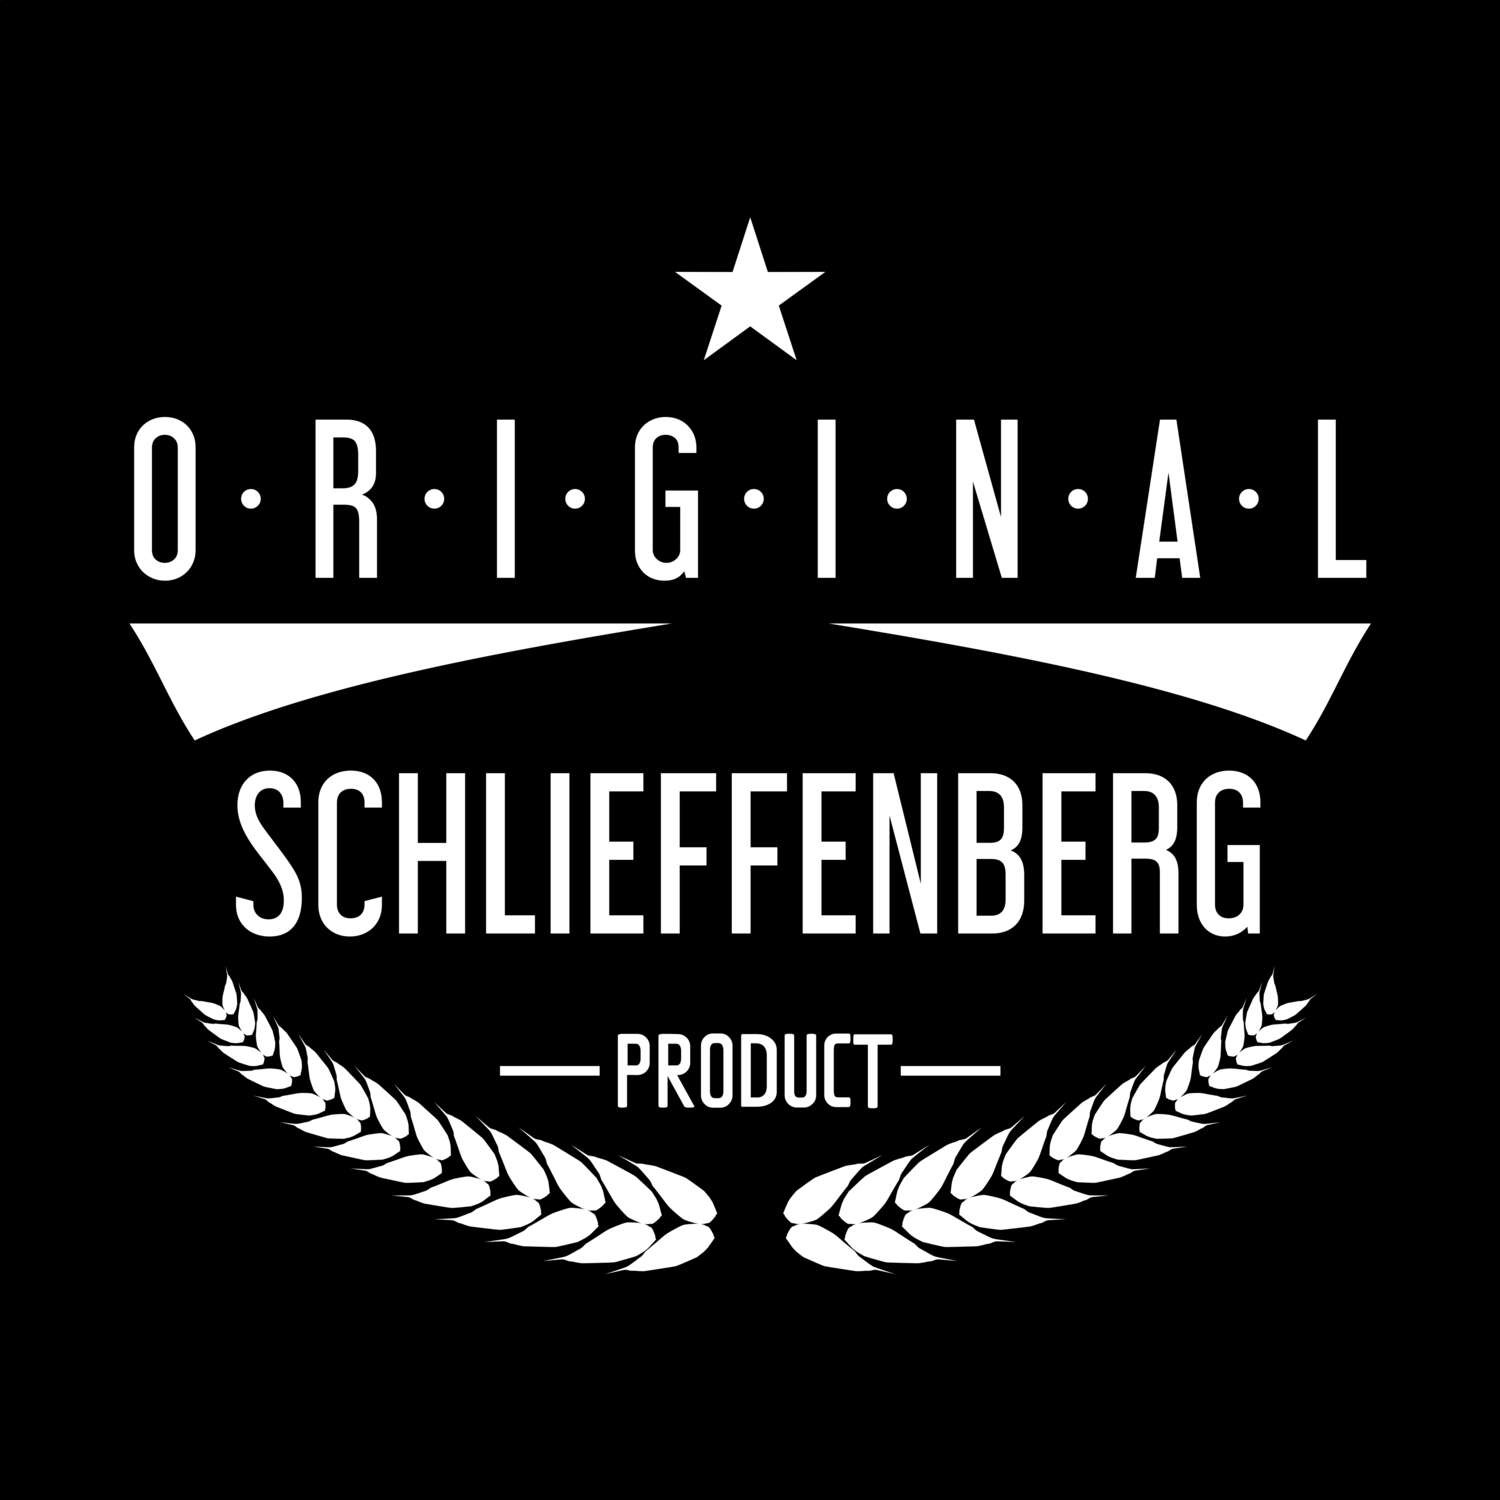 Schlieffenberg T-Shirt »Original Product«